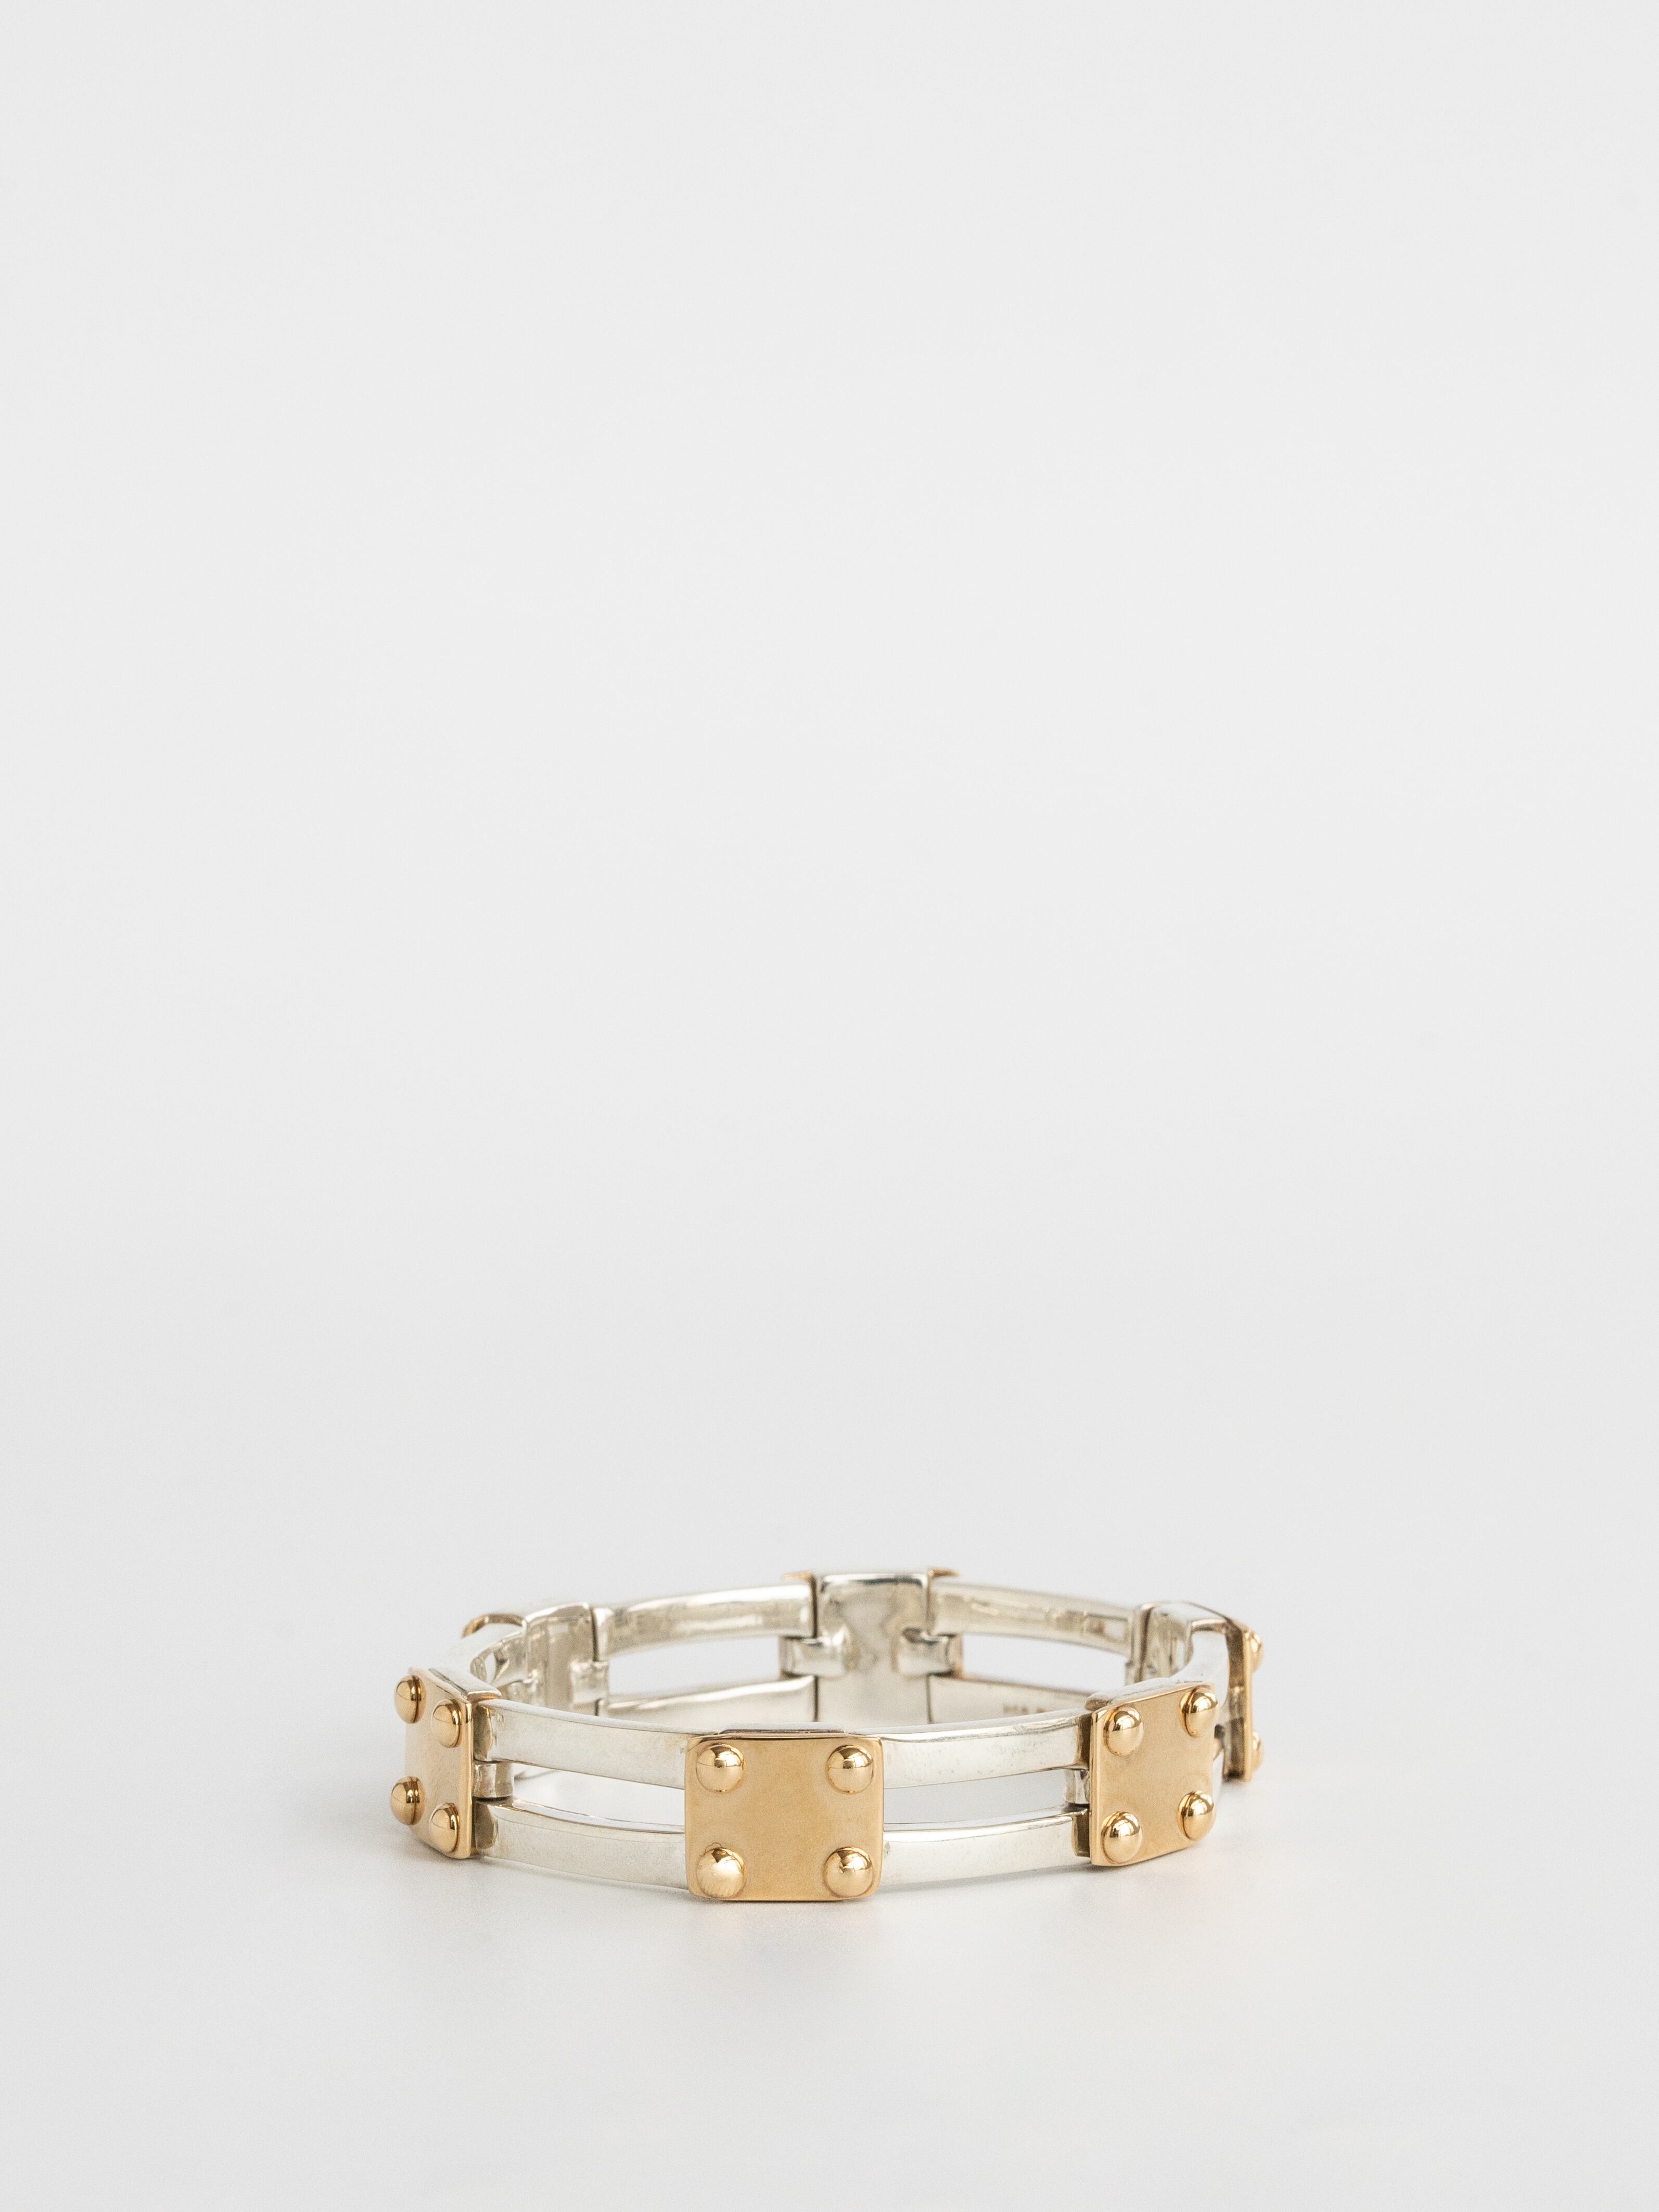 Combination Bracelet / Hermès